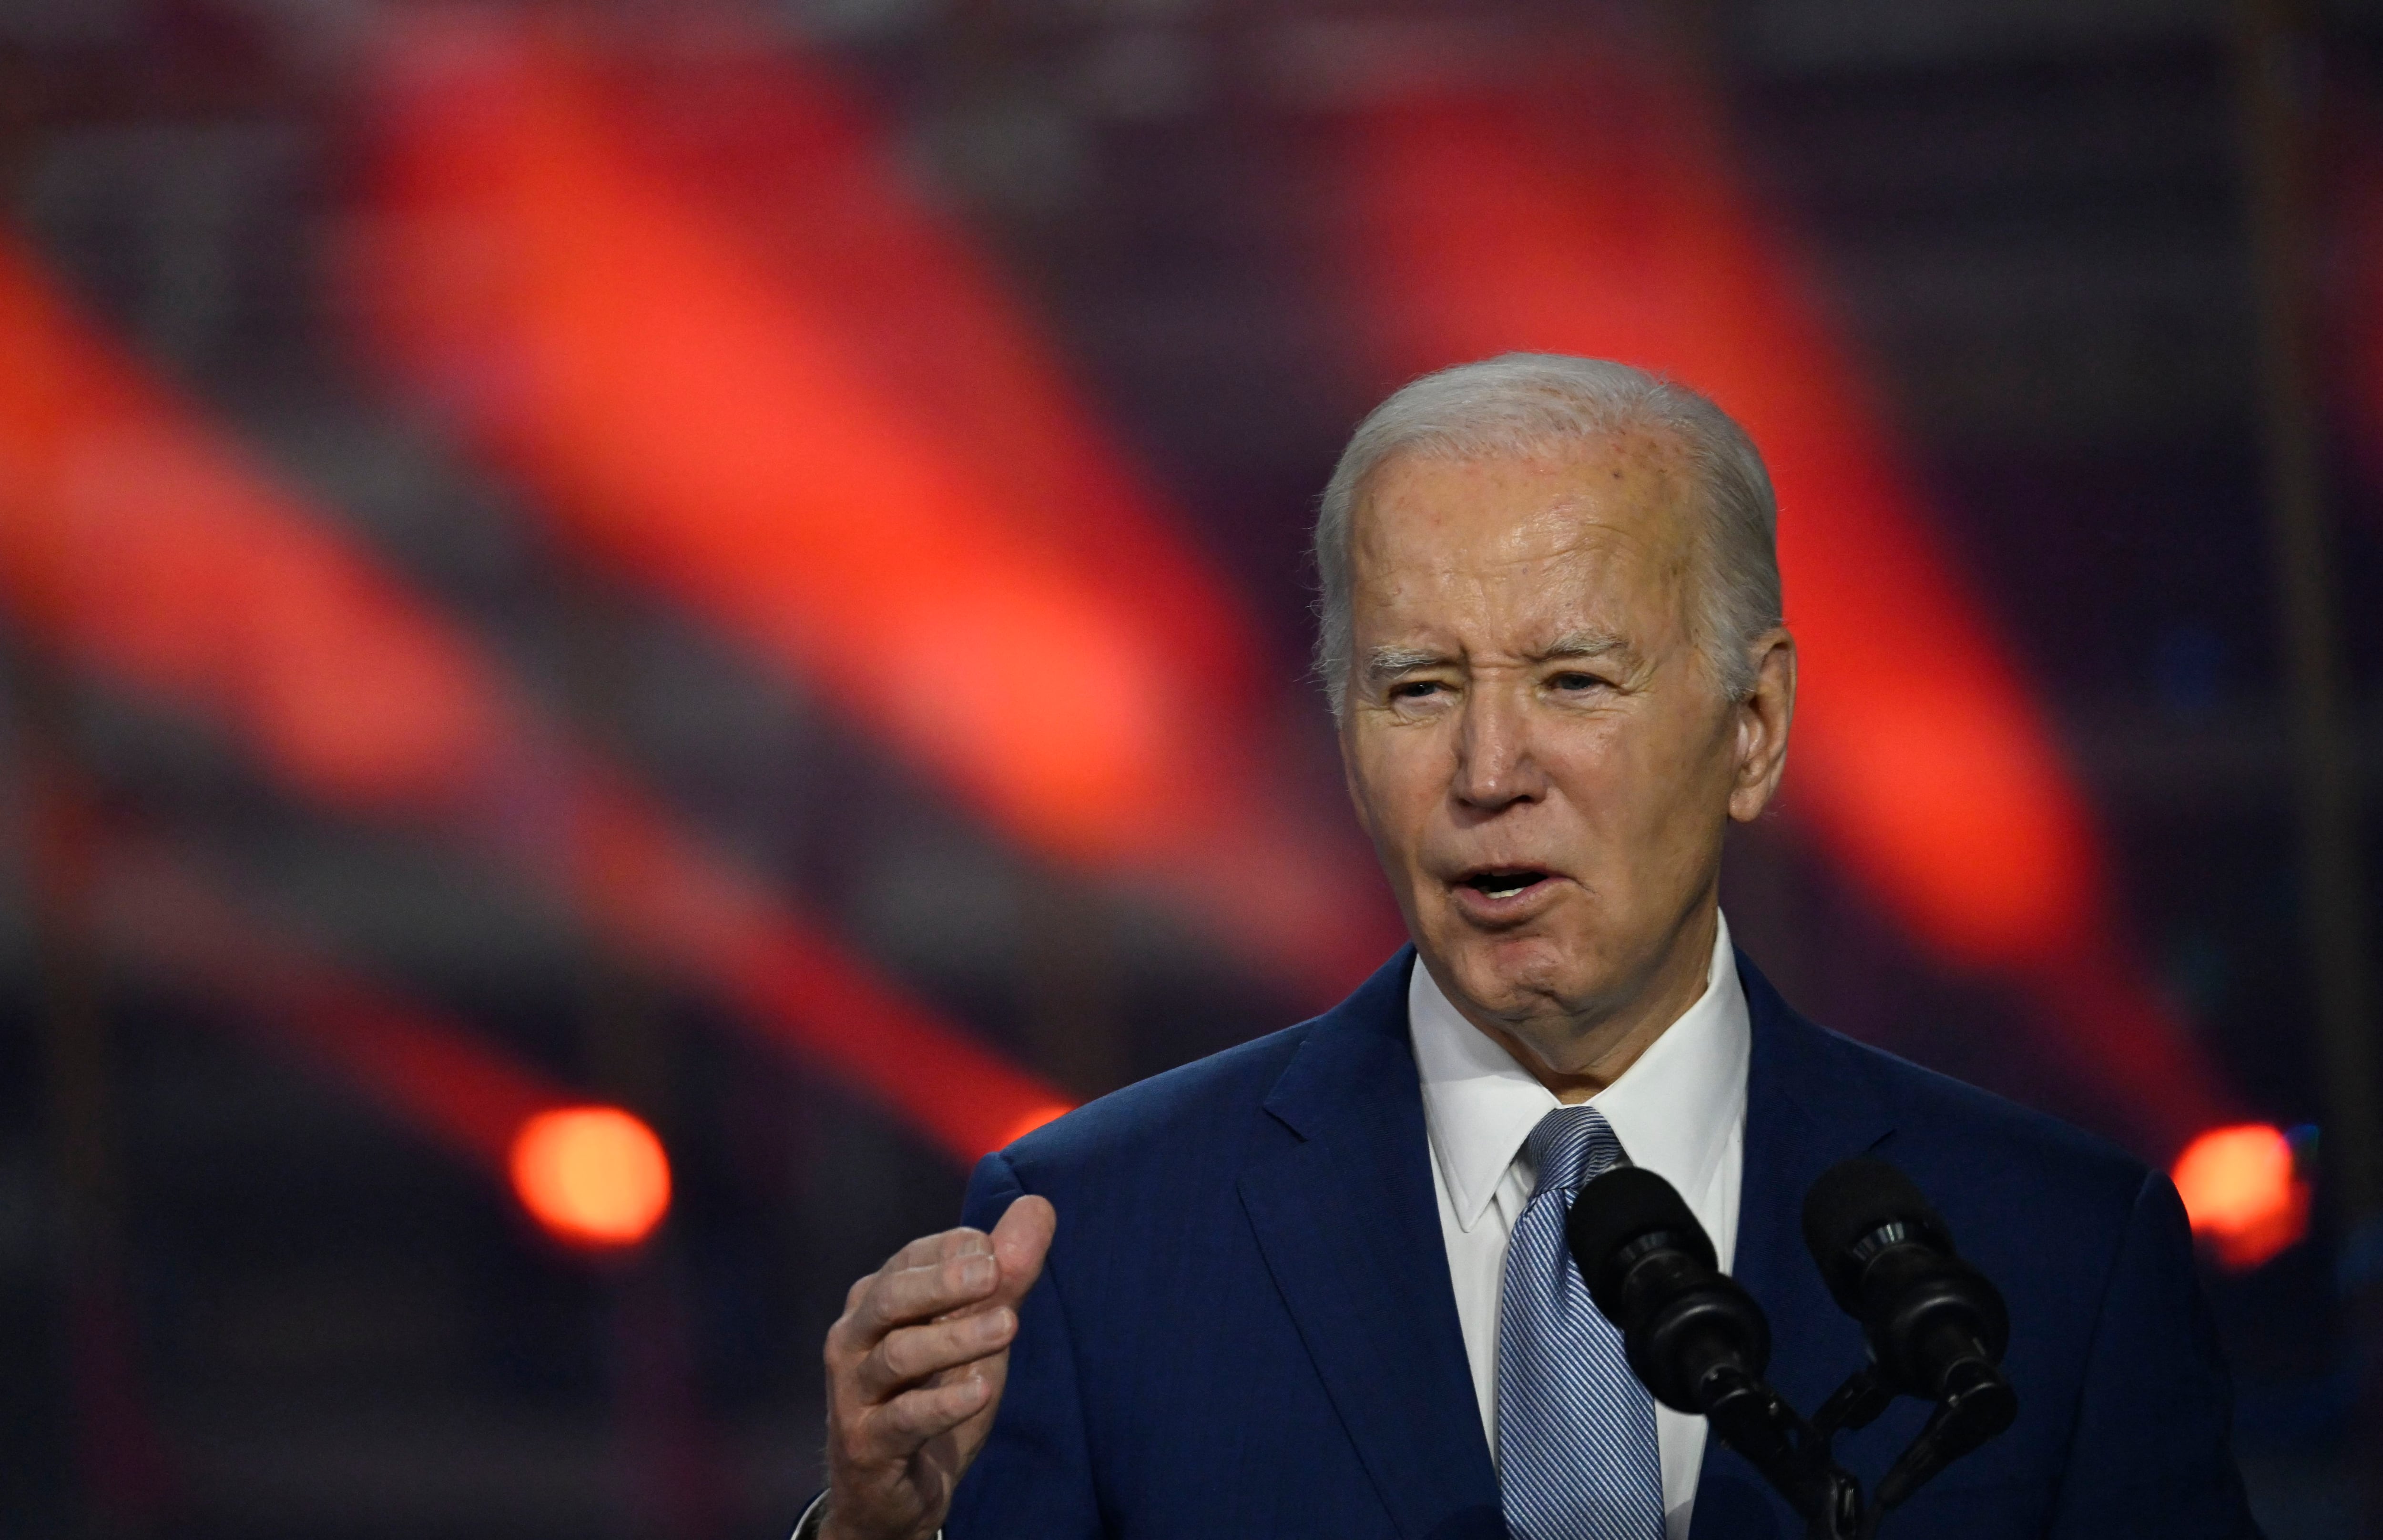 Joe Biden, presidente de los Estados Unidos, anunció la intención de aumentar los aranceles al acero importado de China, así como una serie de medidas ante la competencia de ese país asiático.